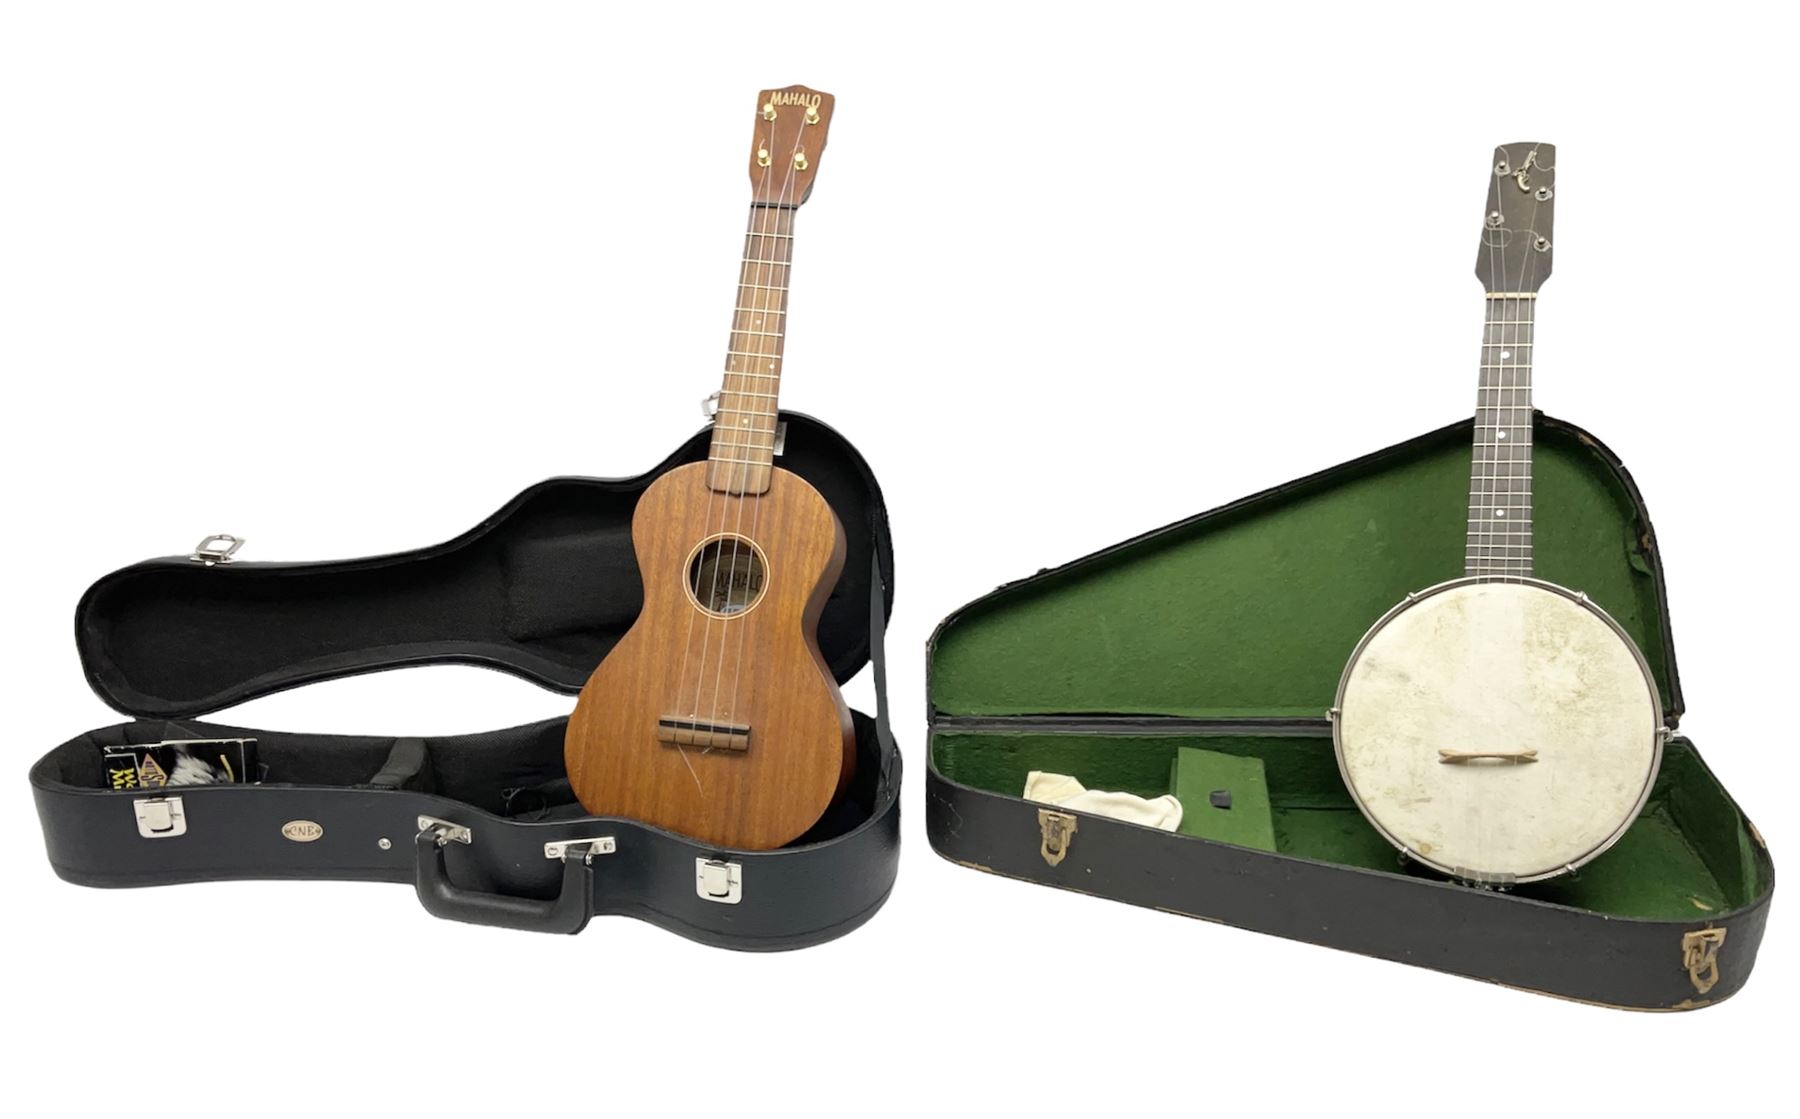 Mahalo mahogany cased guitar shaped ukulele